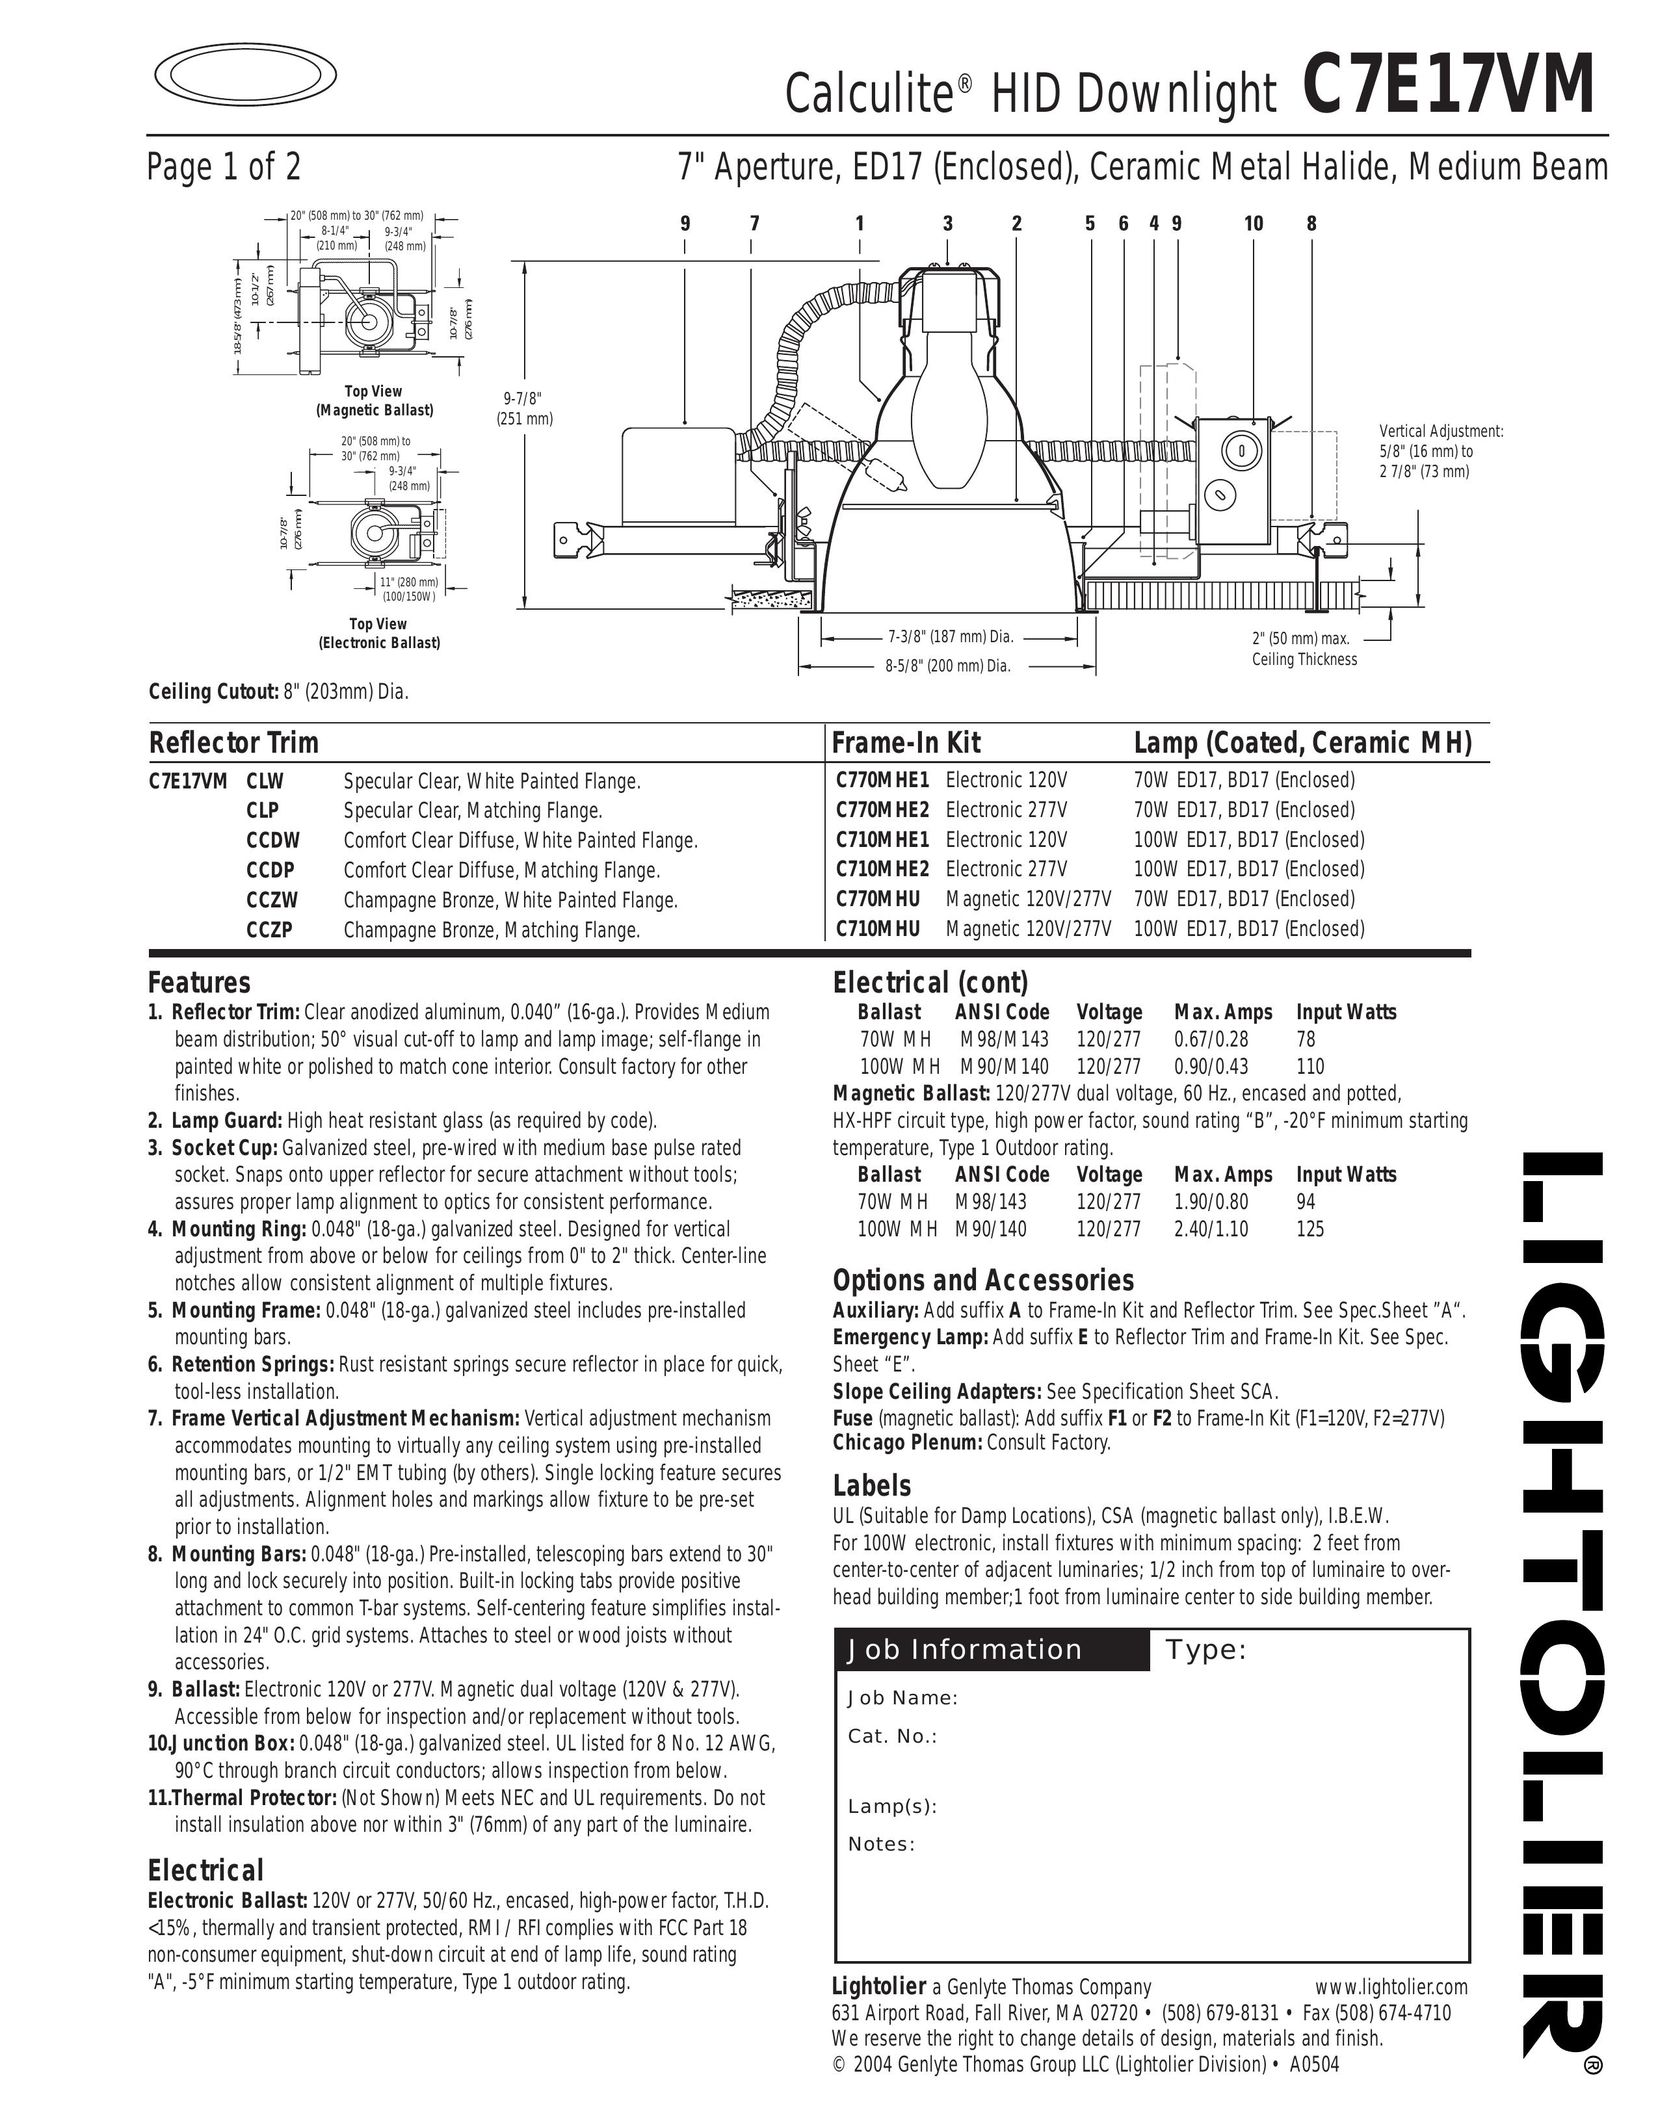 Lightolier C7E17VM Work Light User Manual